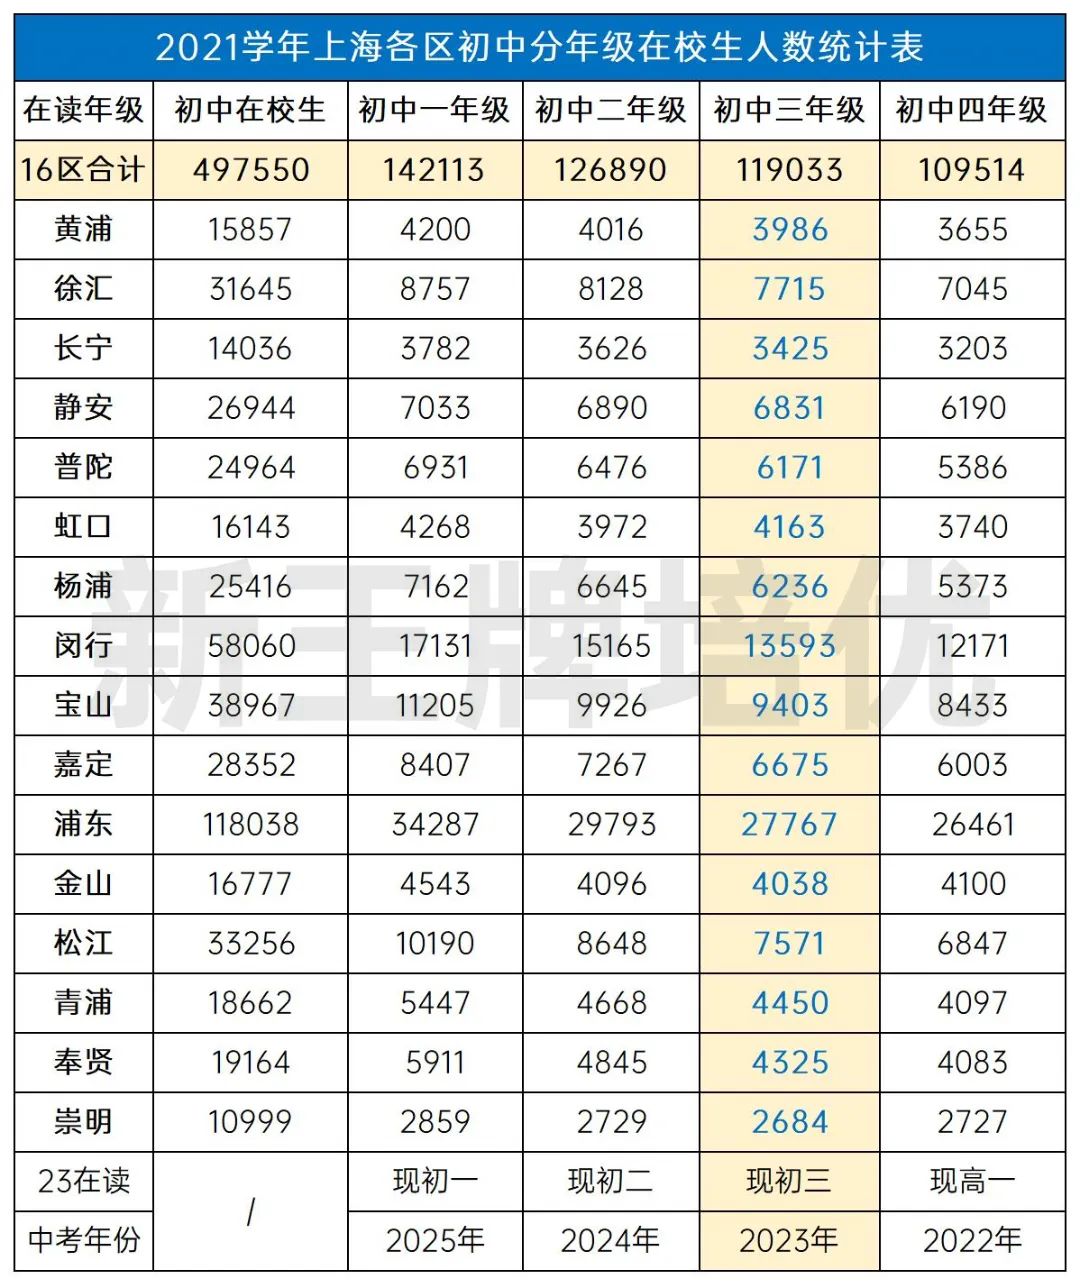 上海教育官网公布数据推算的各区考生人数